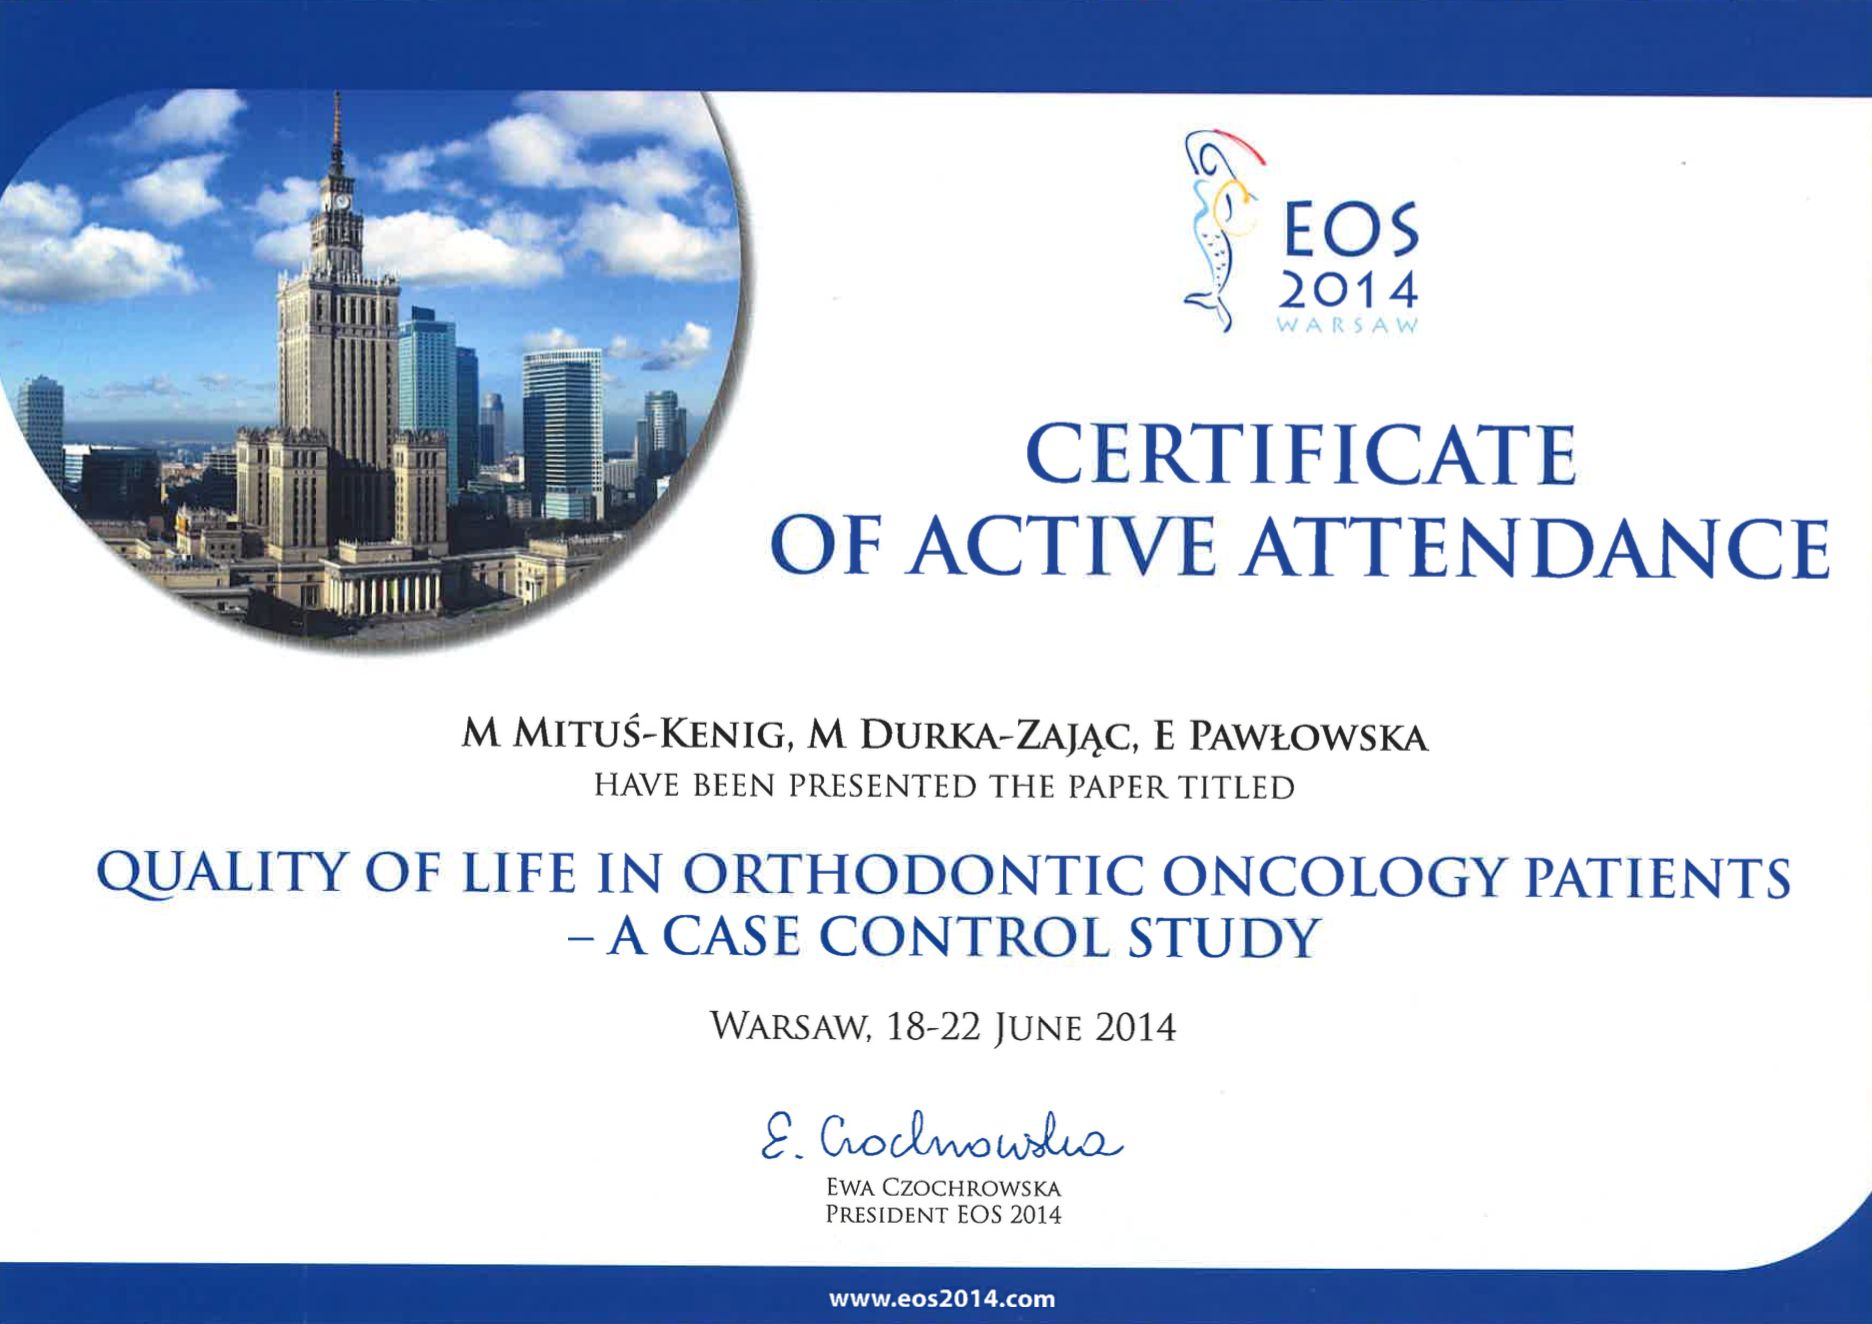 certyfikat potwierdzający udział w wydarzeniu o specjalizacji ortodontycznej